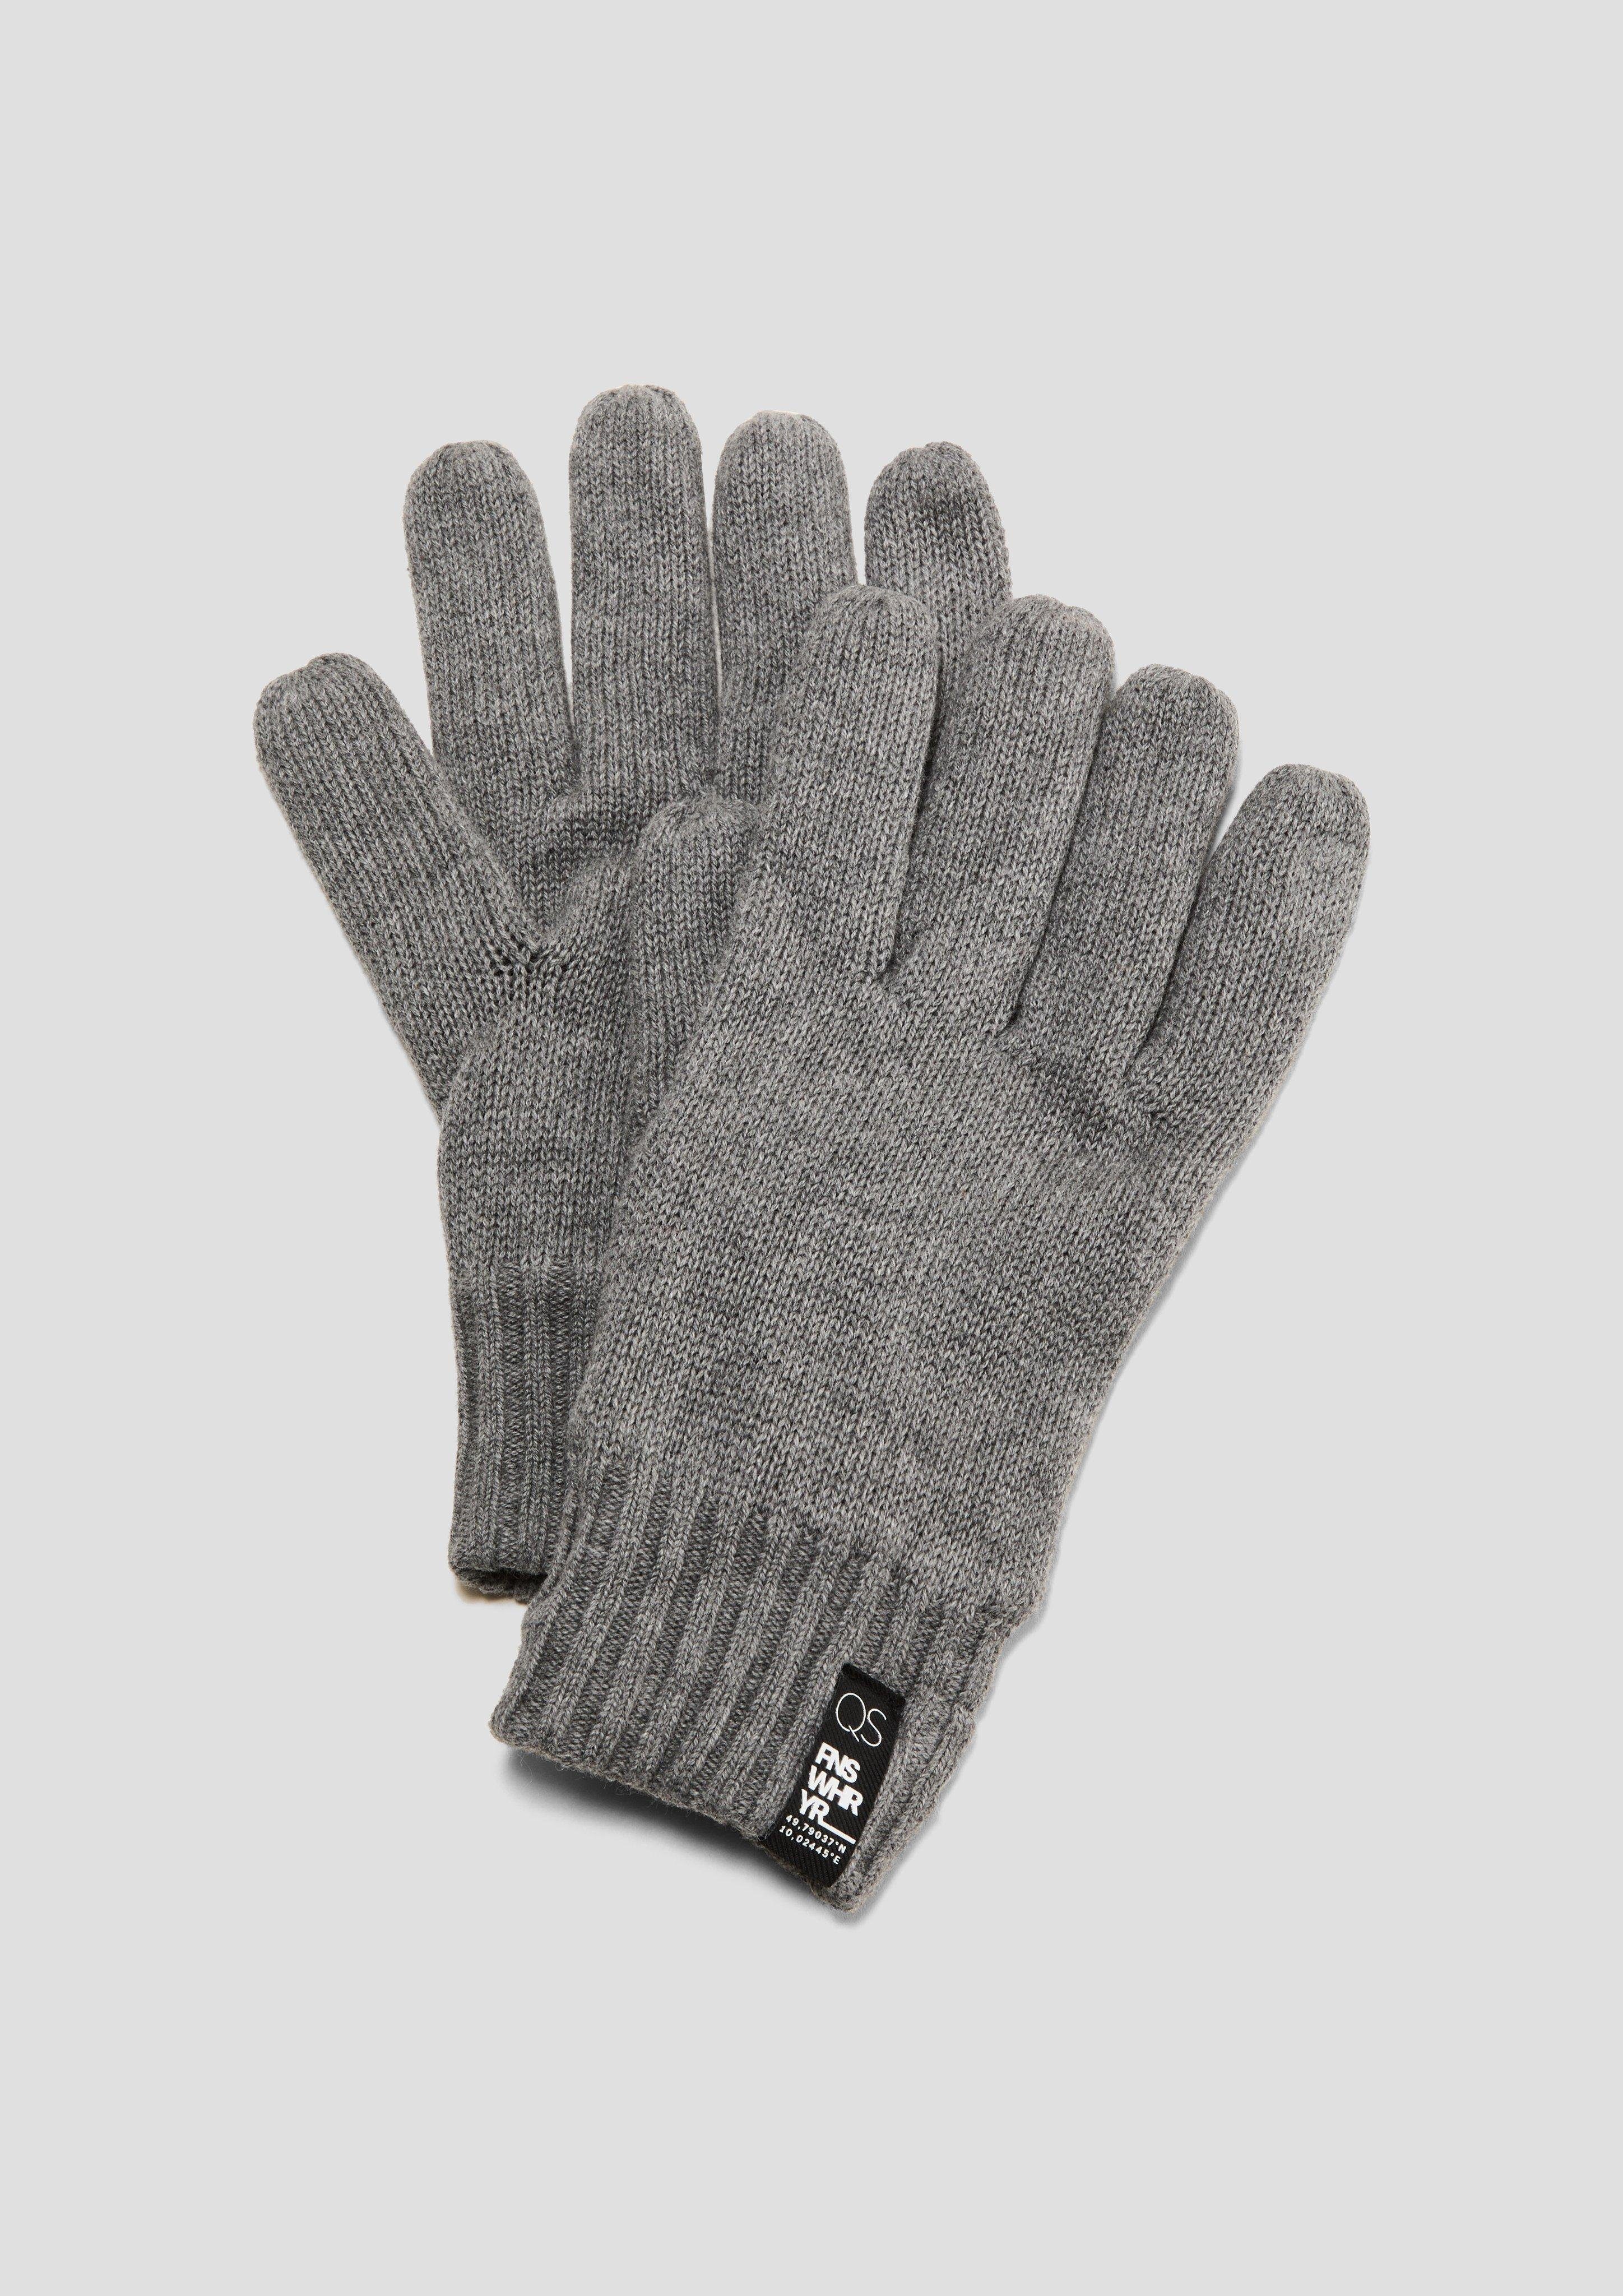 QS mit Strickhandschuhe Handschuhe Fleece-Futter